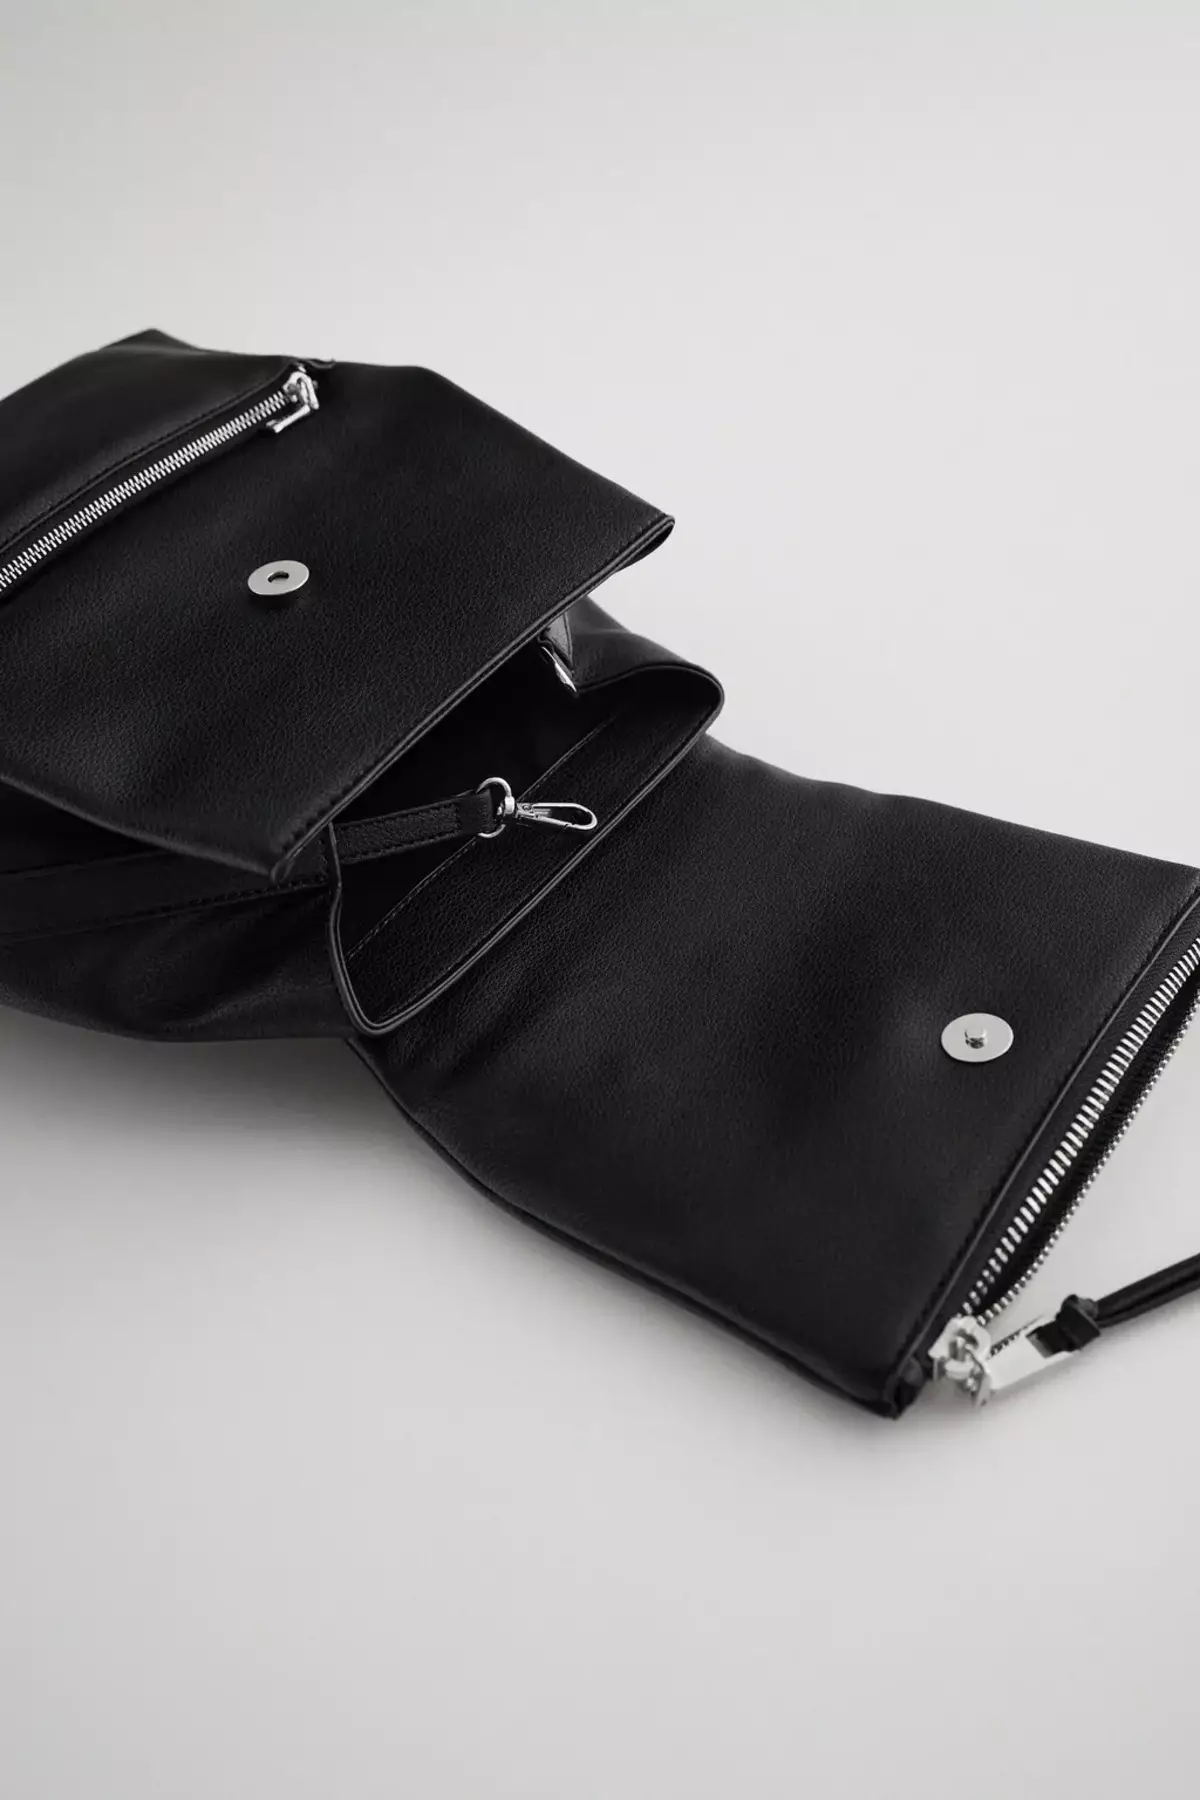 Zara backpacks: ຜູ້ຍິງສີດໍາ, ເດັກນ້ອຍສໍາລັບເດັກນ້ອຍ, ສີຂີ້ເຖົ່າແລະສີແດງ, ພ້ອມທັງແບບກະເປົາຂອງກະເປົາຈາກບໍລິສັດ. ສິ່ງທີ່ດີທີ່ສຸດທີ່ຈະໃສ່? 15437_30